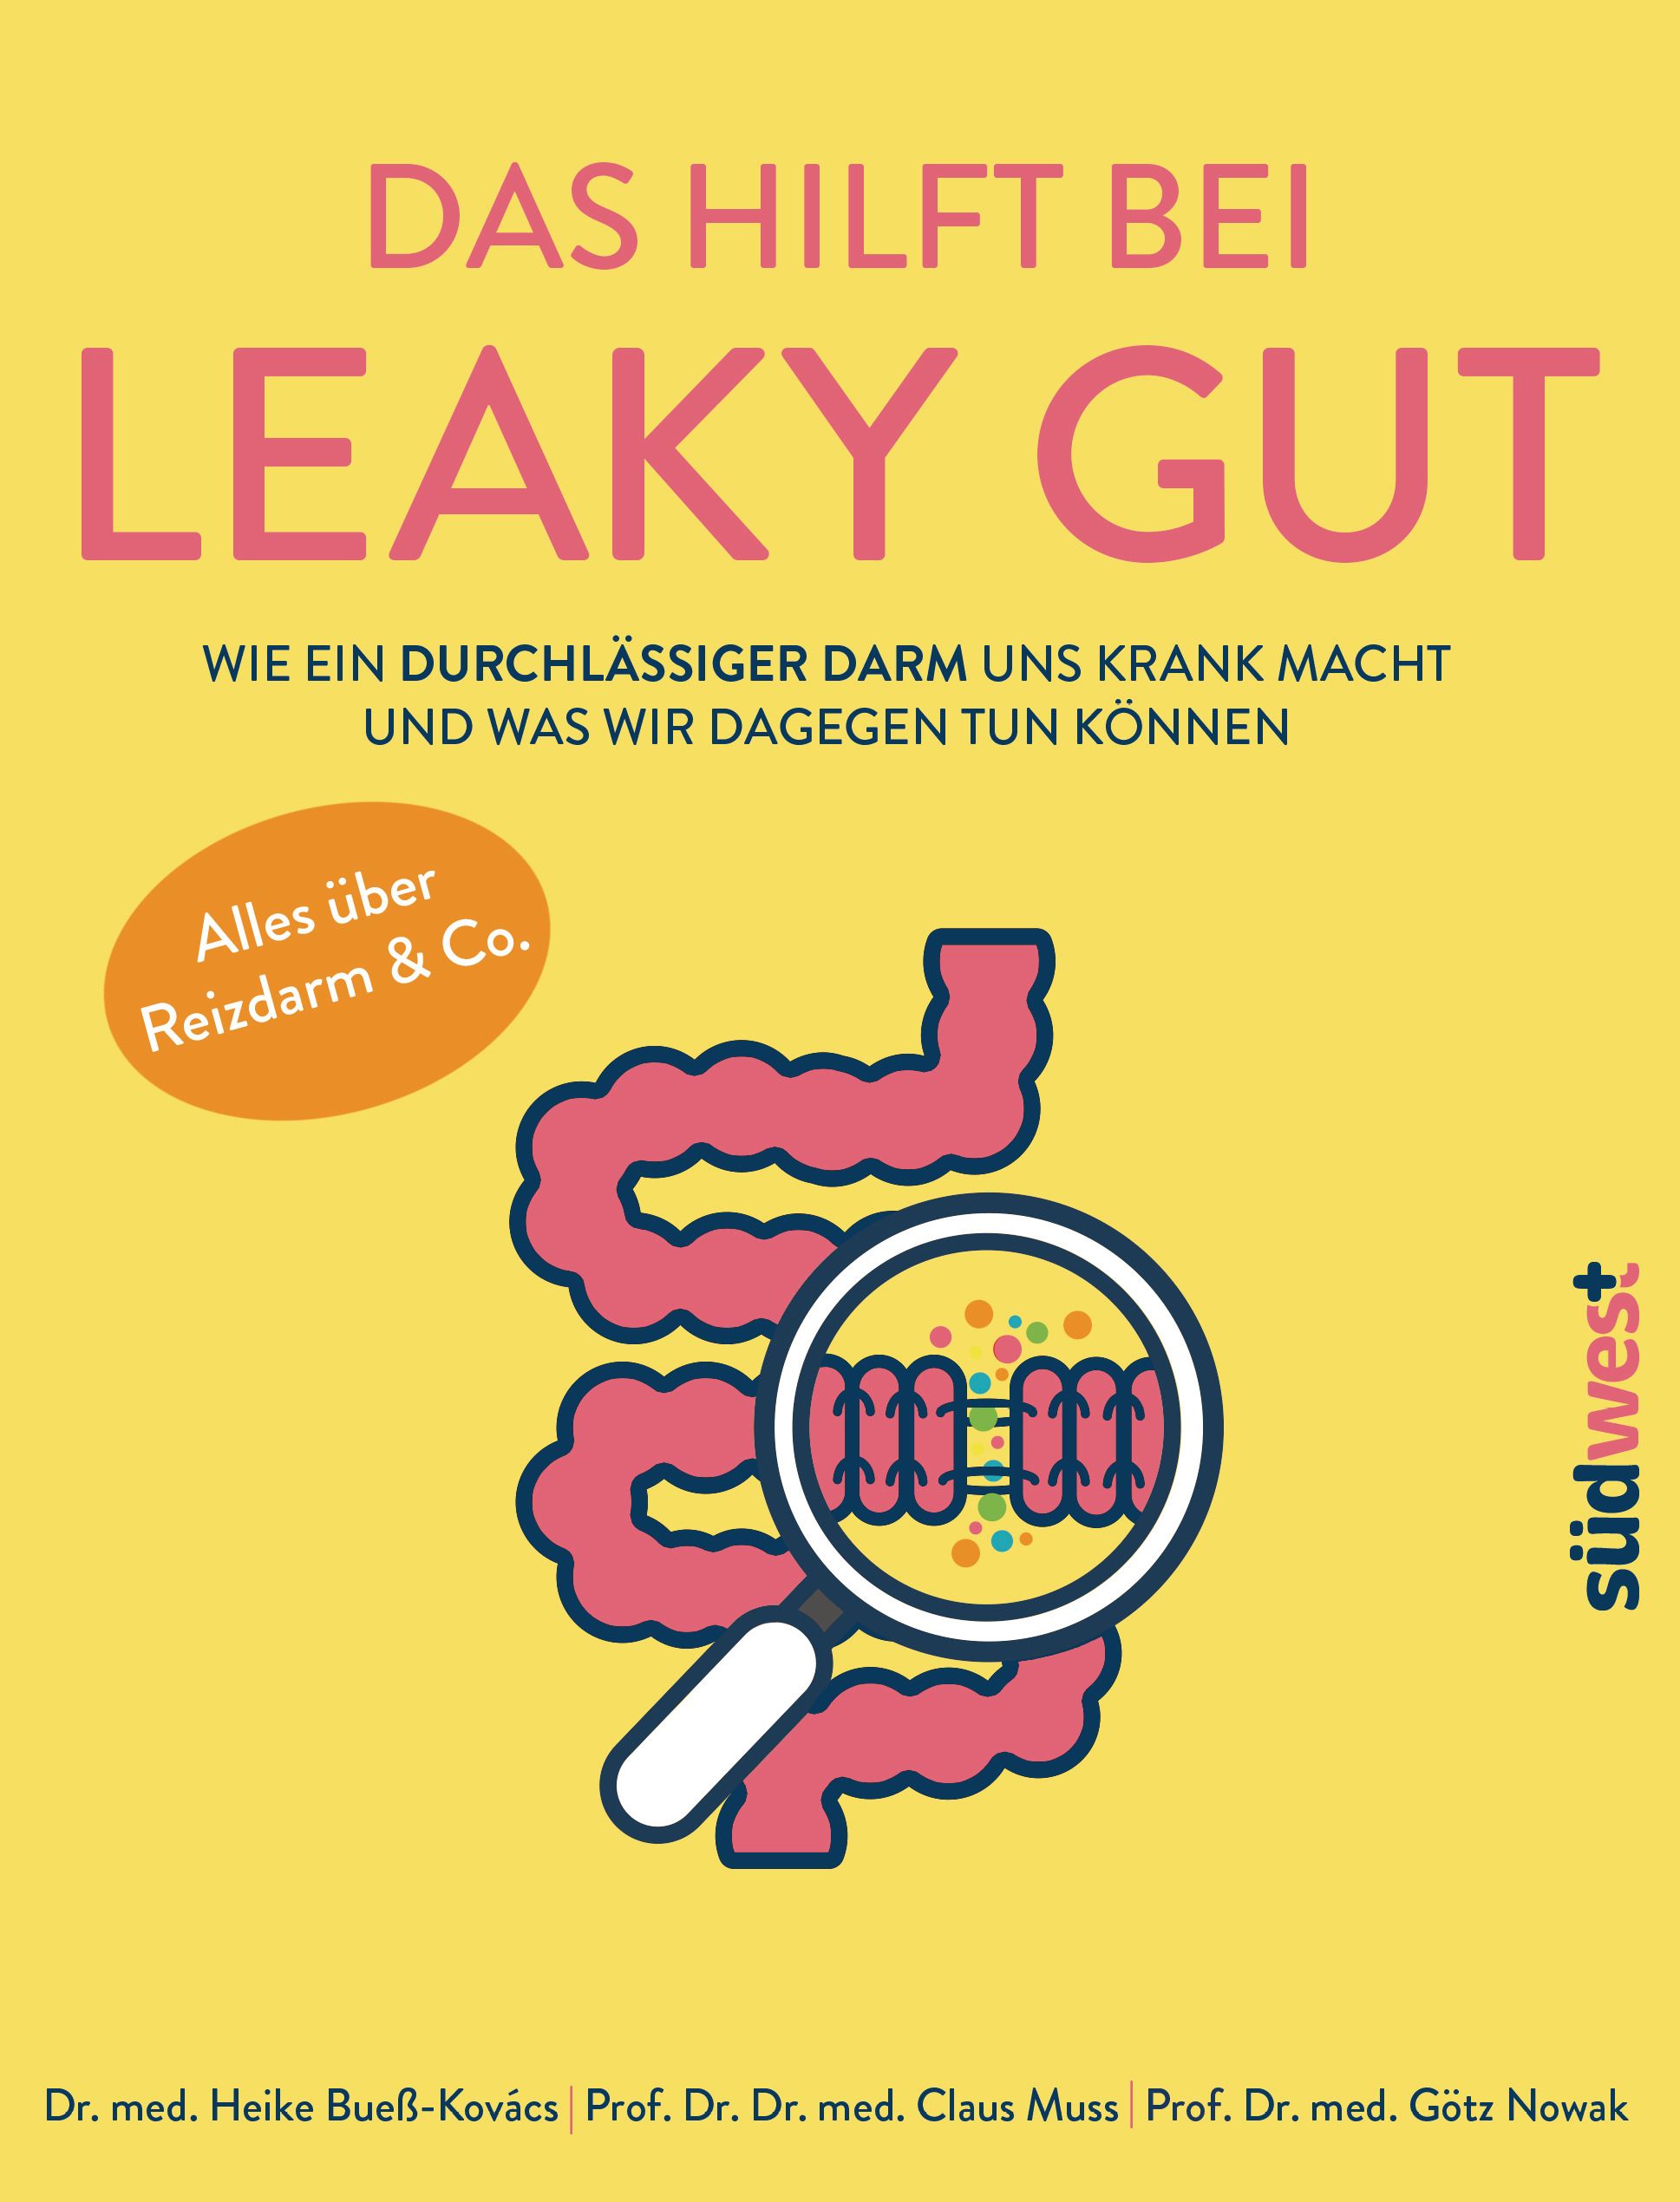 Das hilft bei Leaky Gut - Wie ein durchlässiger Darm uns krank macht und was wir dagegen tun